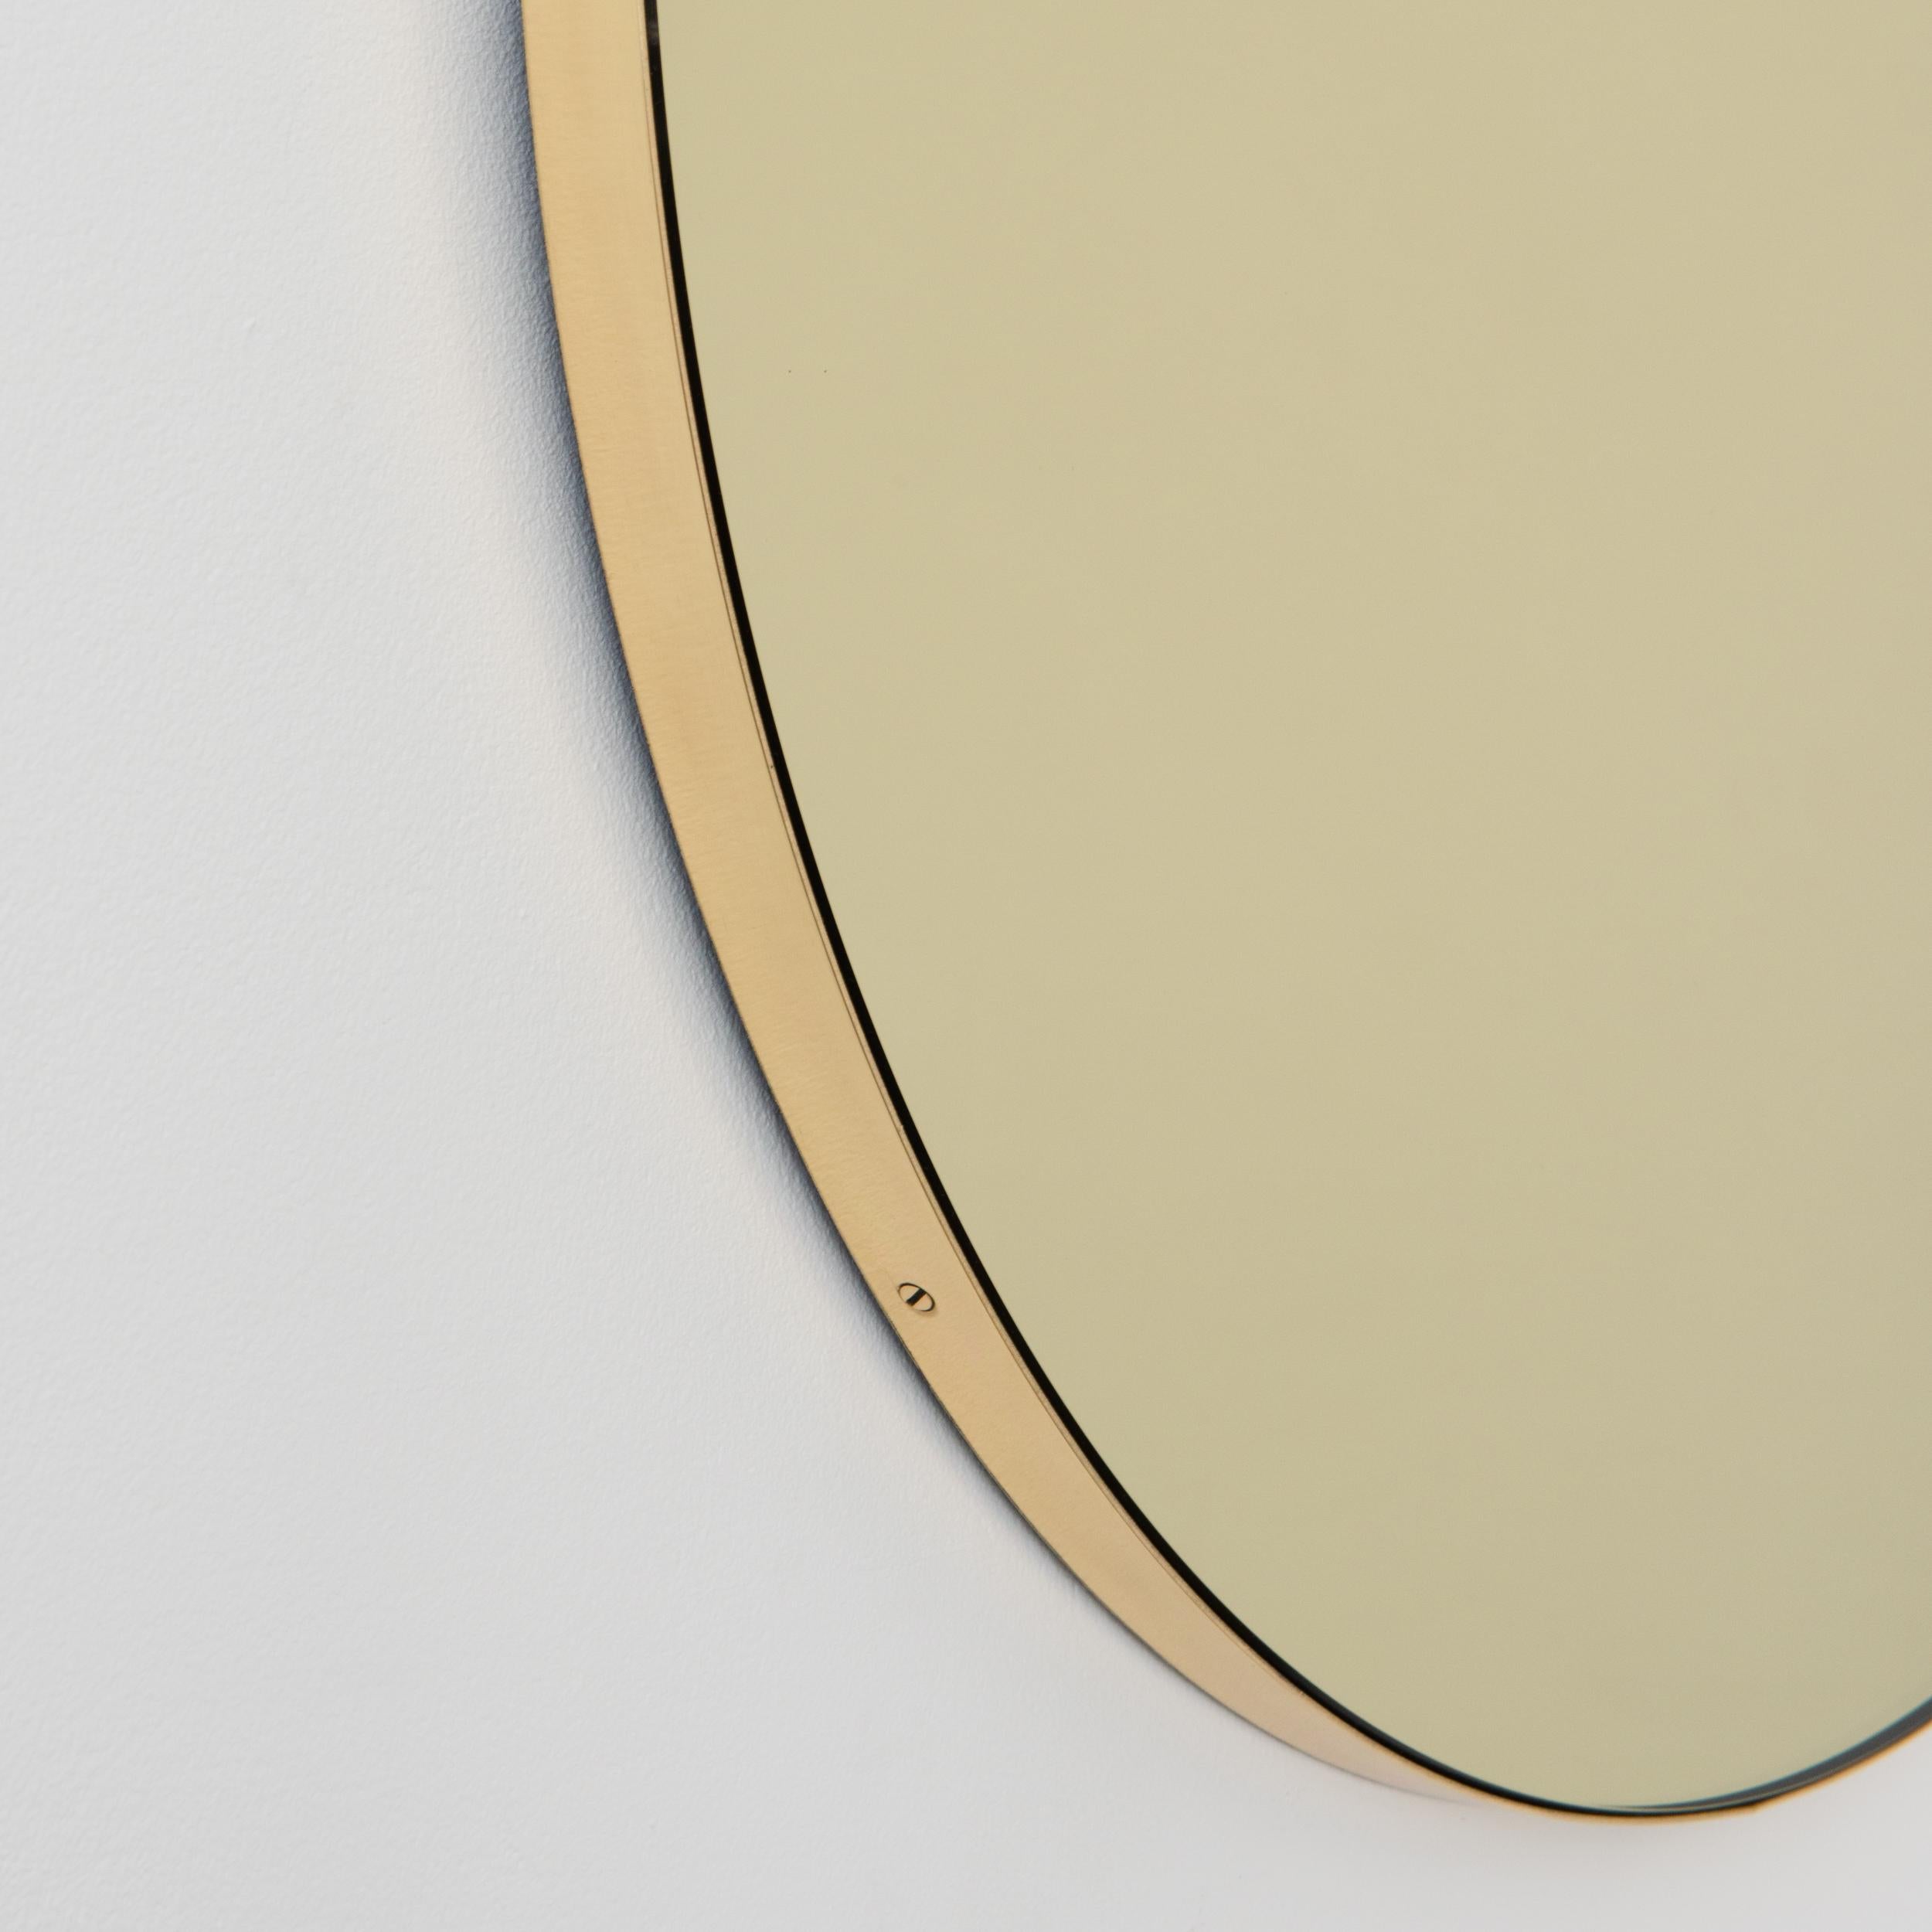 Miroir rond Orbis™ contemporain teinté d'or avec un cadre minimaliste en laiton brossé massif. Les détails et la finition, y compris les vis en laiton visibles, soulignent l'aspect artisanal et la qualité du miroir, véritable signature de notre